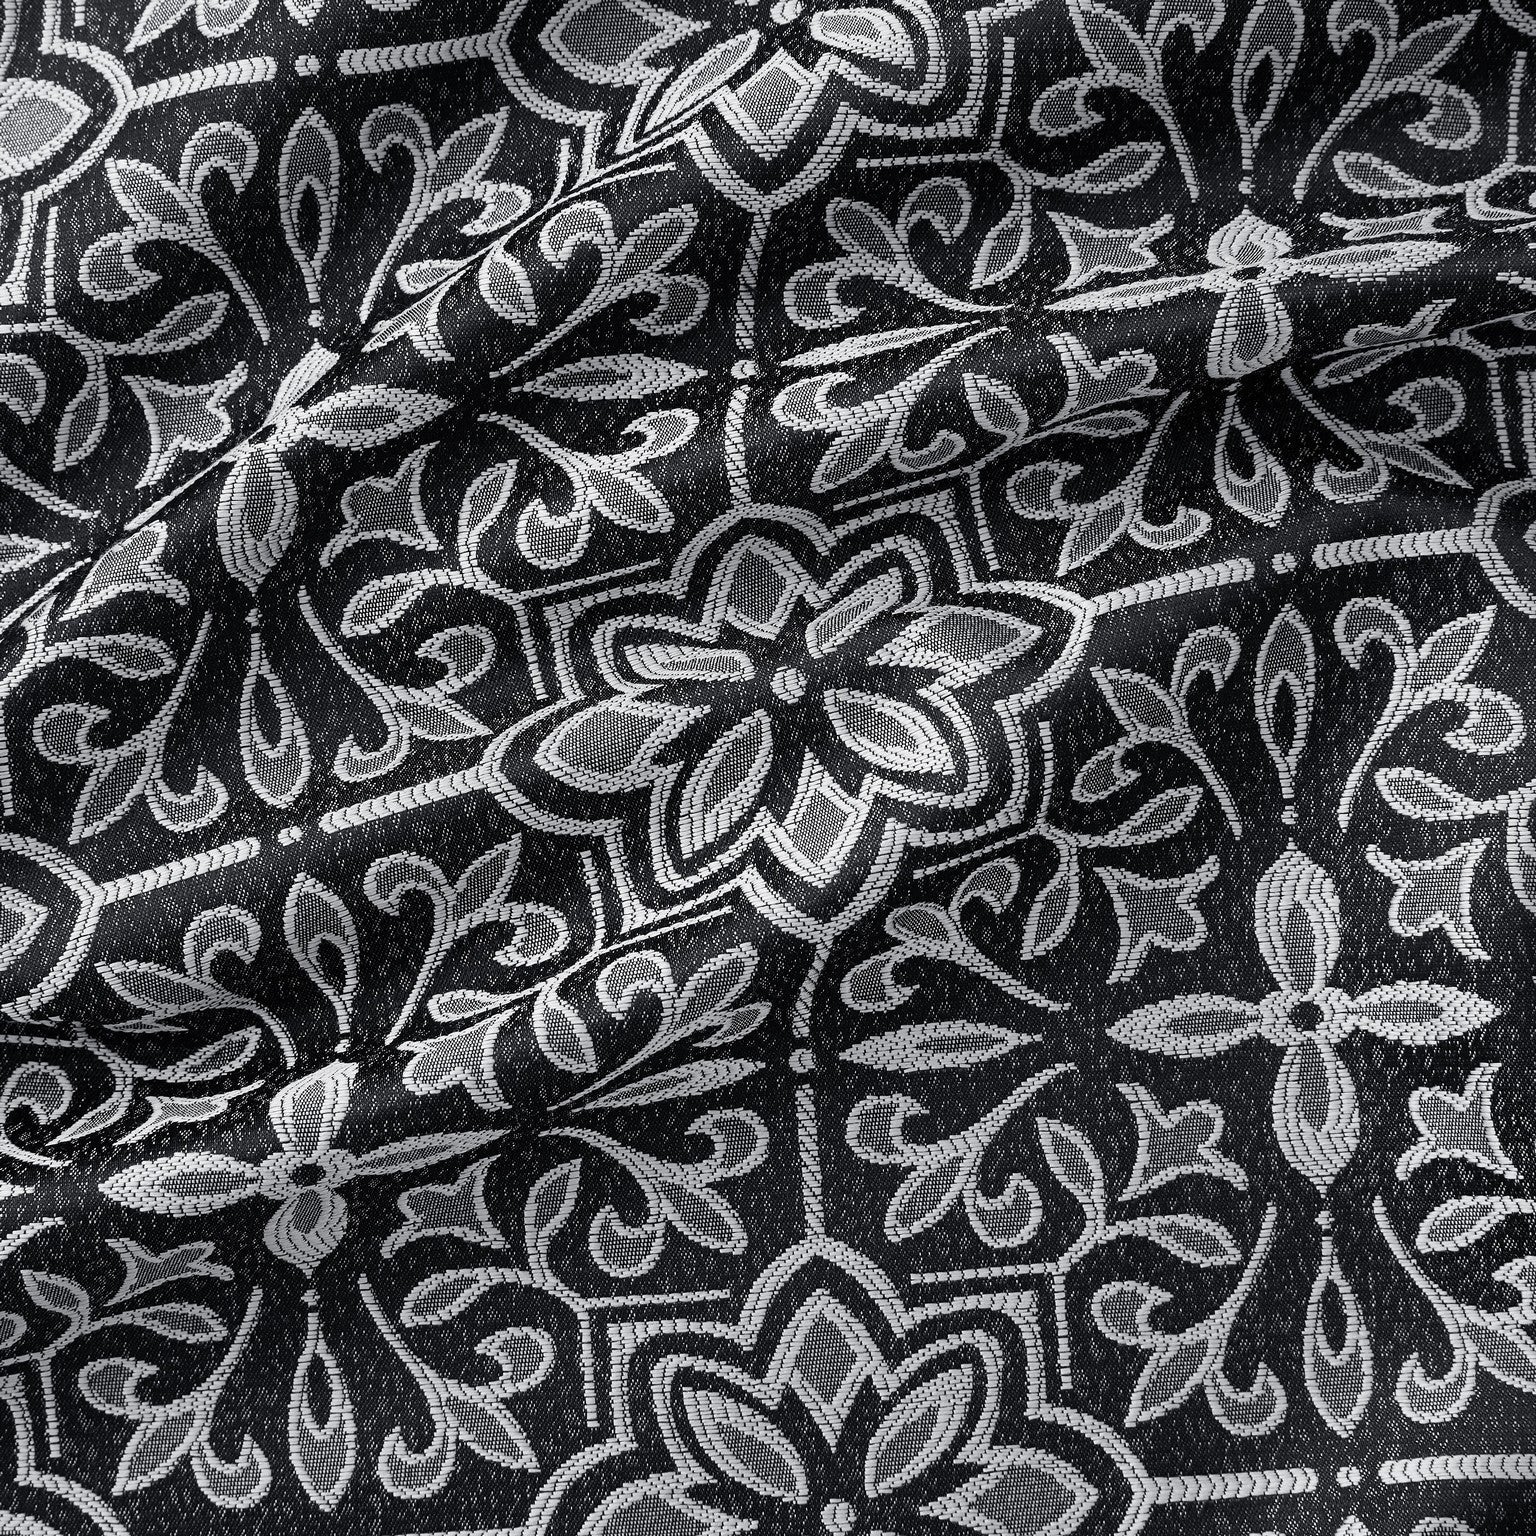 Mia Moroccan Tile 100% Blackout Grommet Curtain Panels